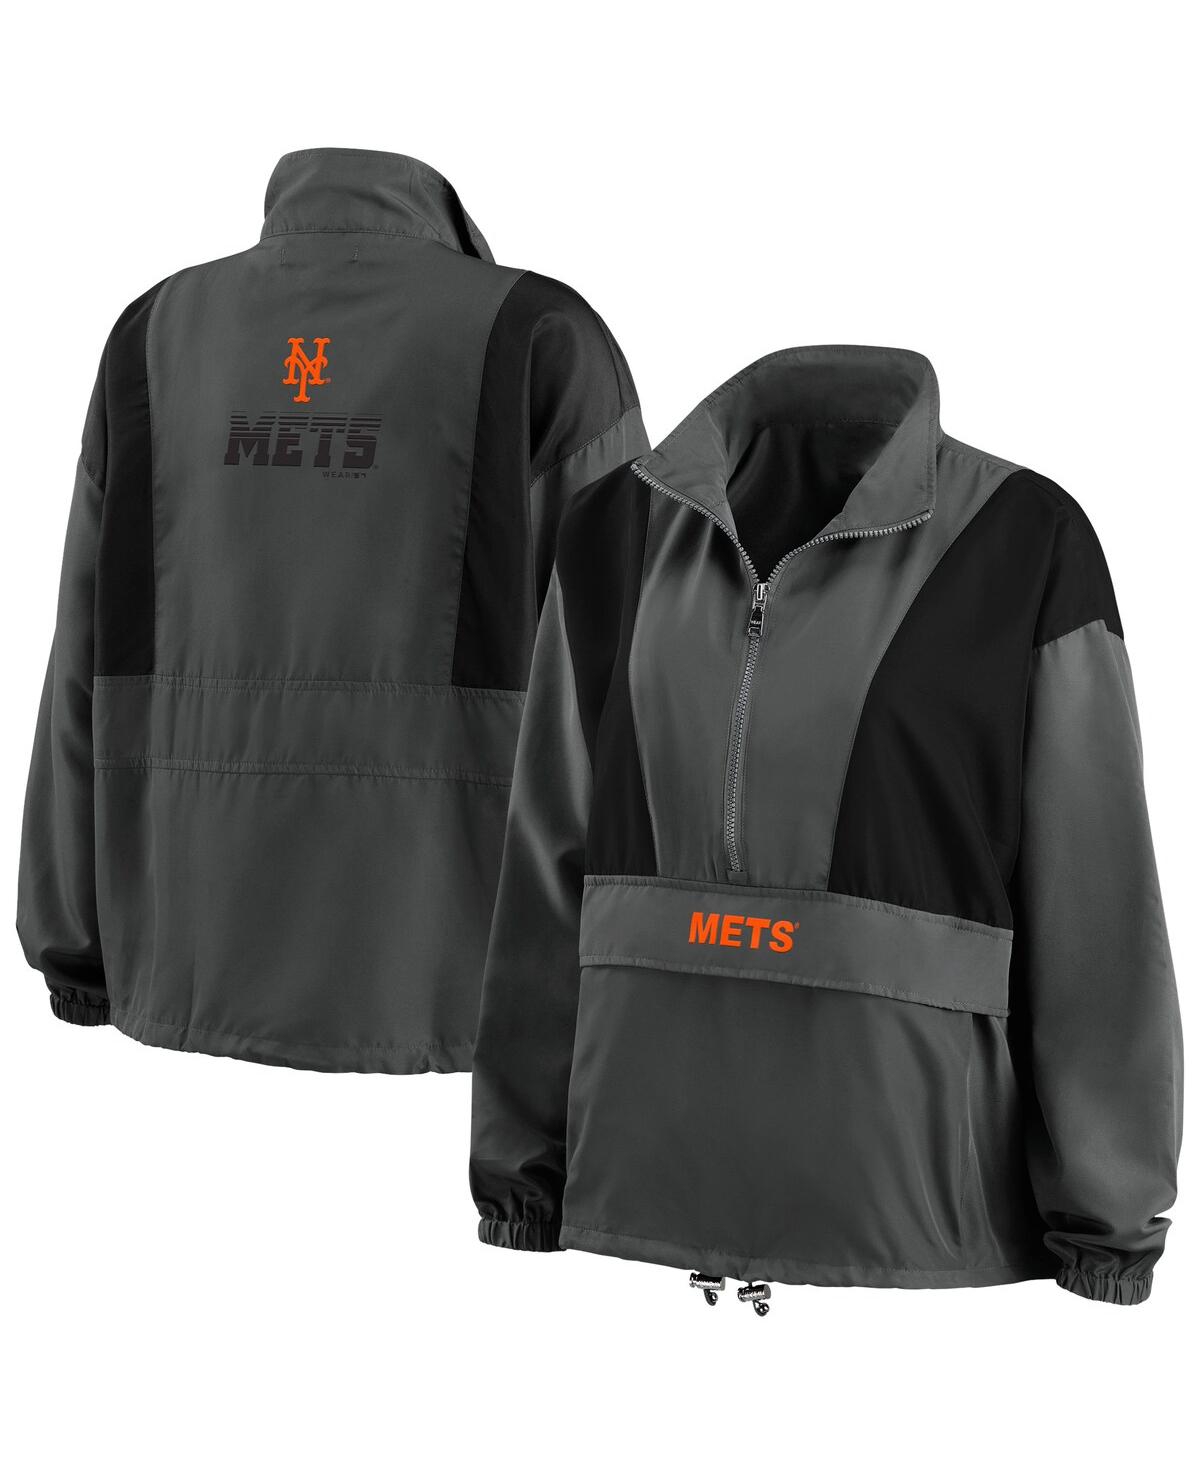 Wear By Erin Andrews Women's  Charcoal New York Mets Packable Half-zip Jacket